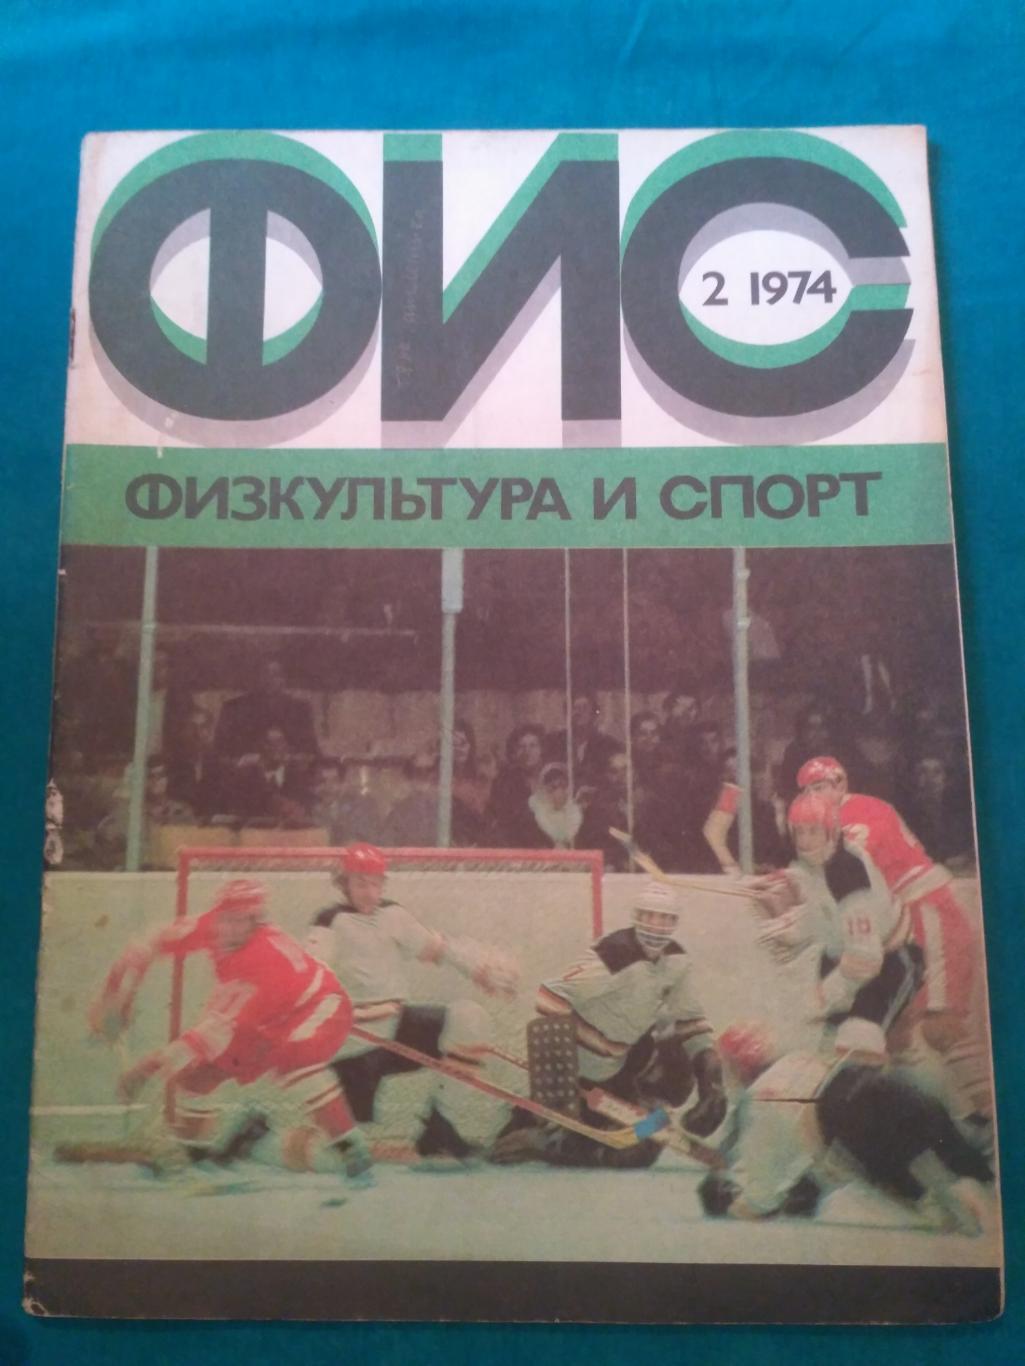 Журнал ФиС № 2 1974 - Хоккей СССР-ФРГ - Тихонов Мальцев - Бокс